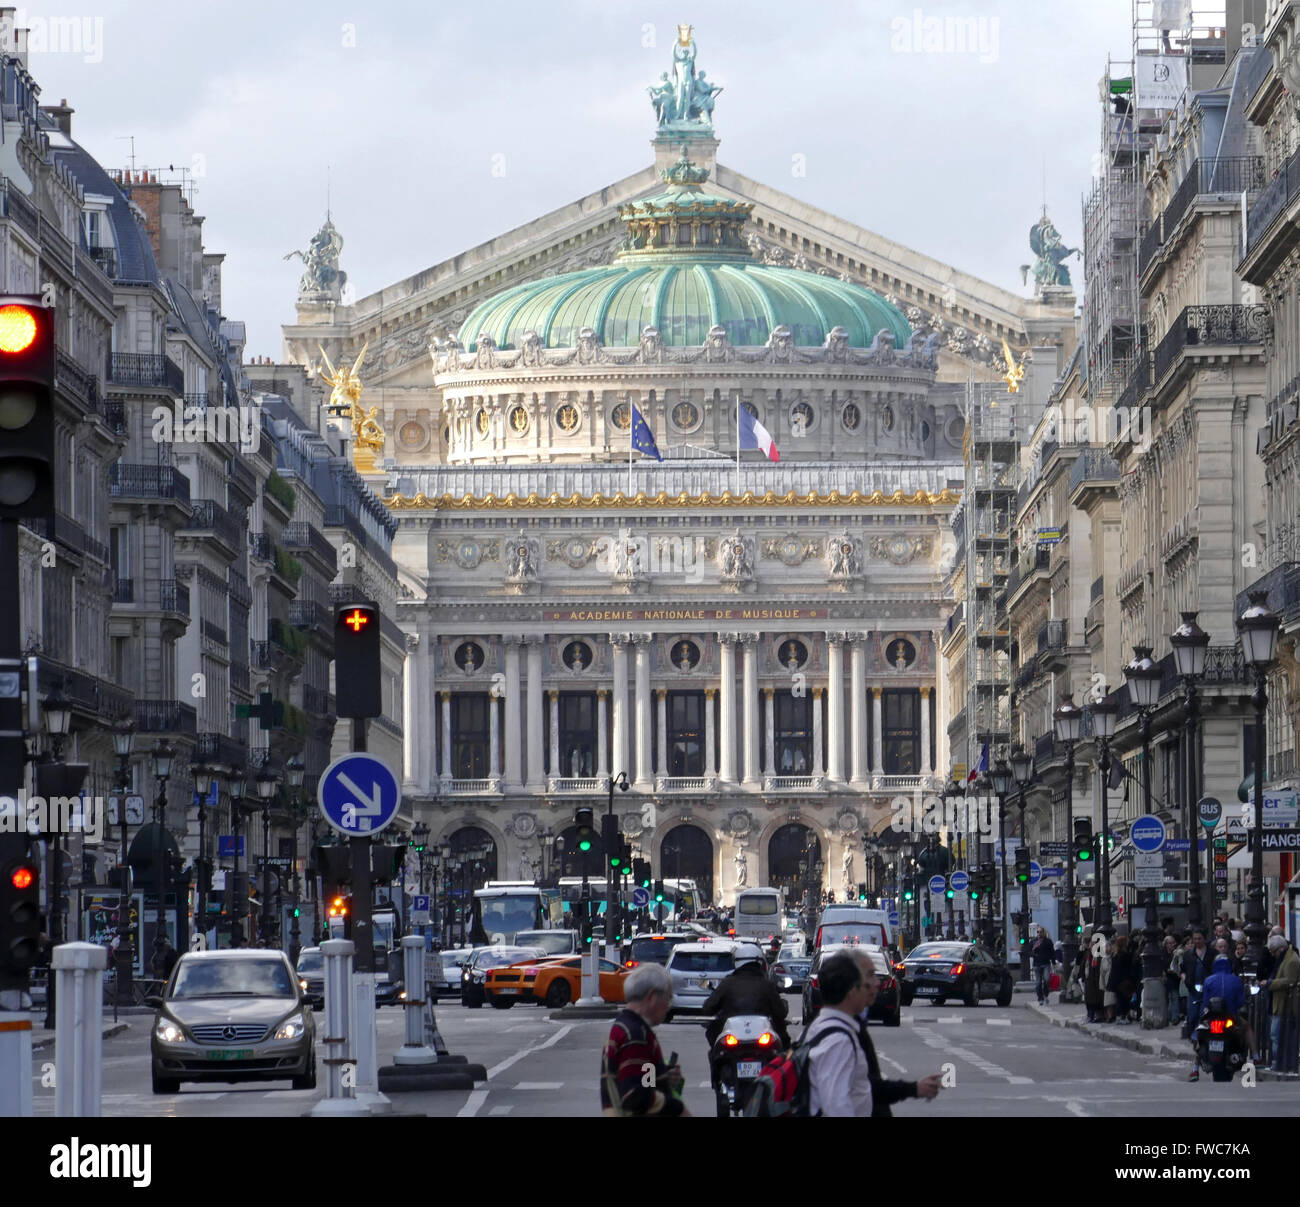 Academie Nationale de Music - Palais Garnier, Paris, France. Stock Photo